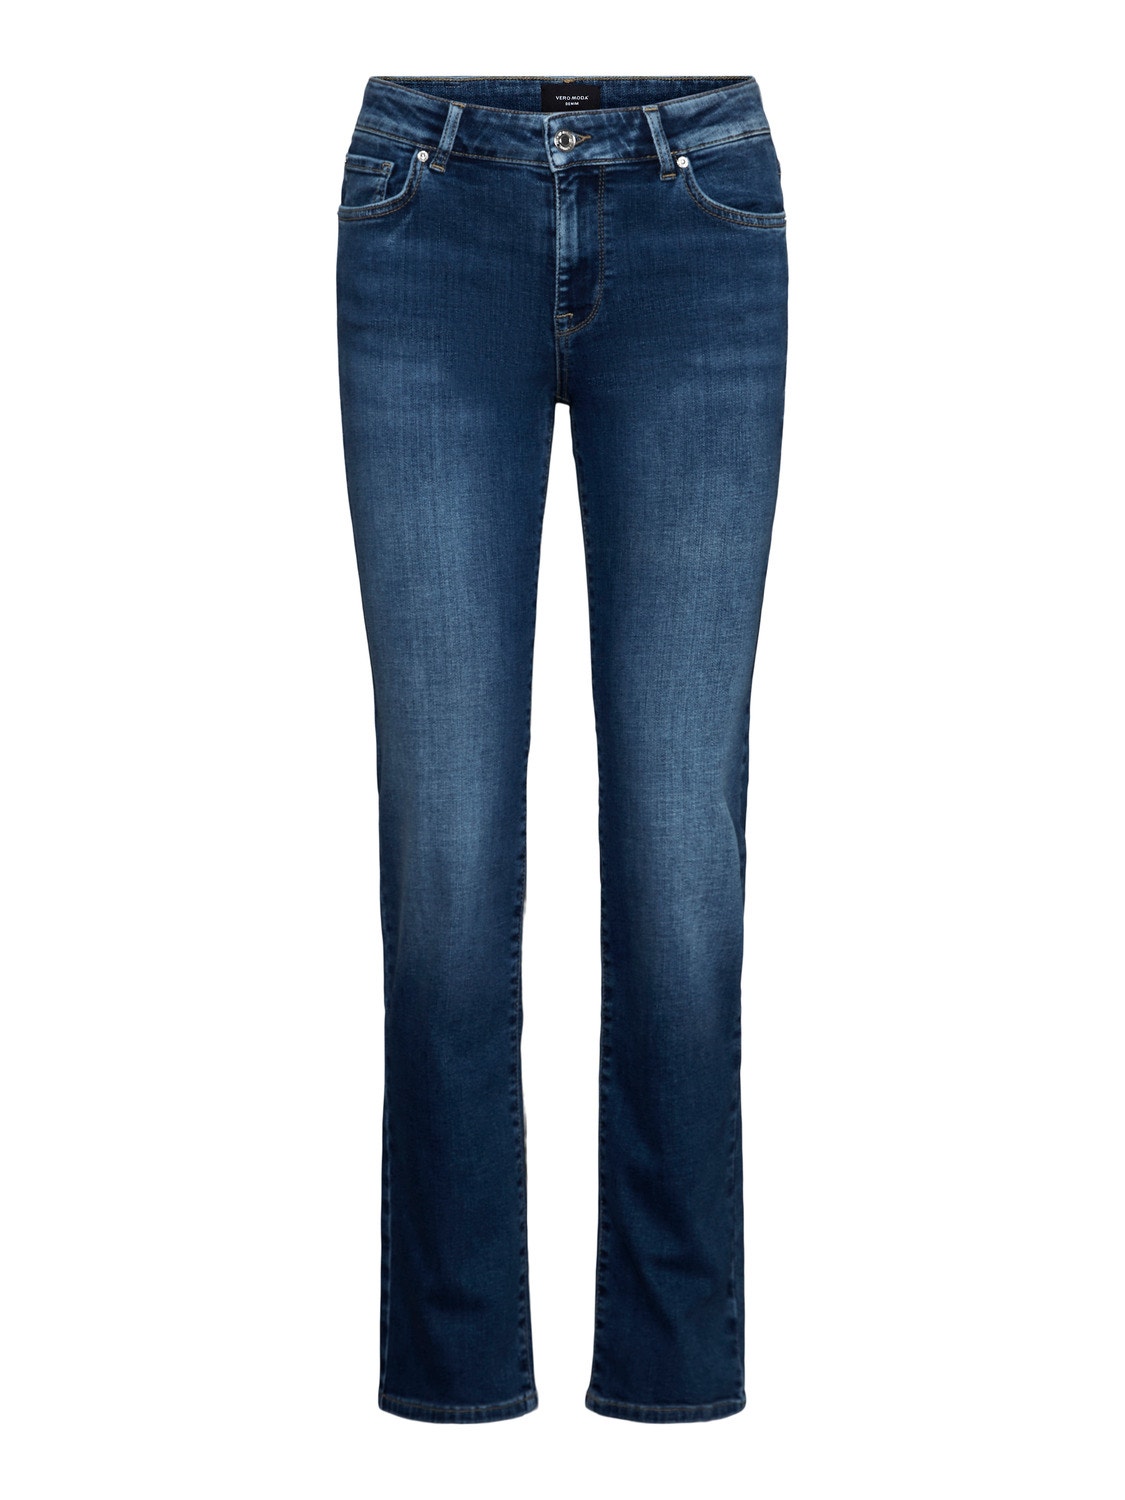 Vero Moda VMDAF Straight Fit Jeans -Medium Blue Denim - 10284790